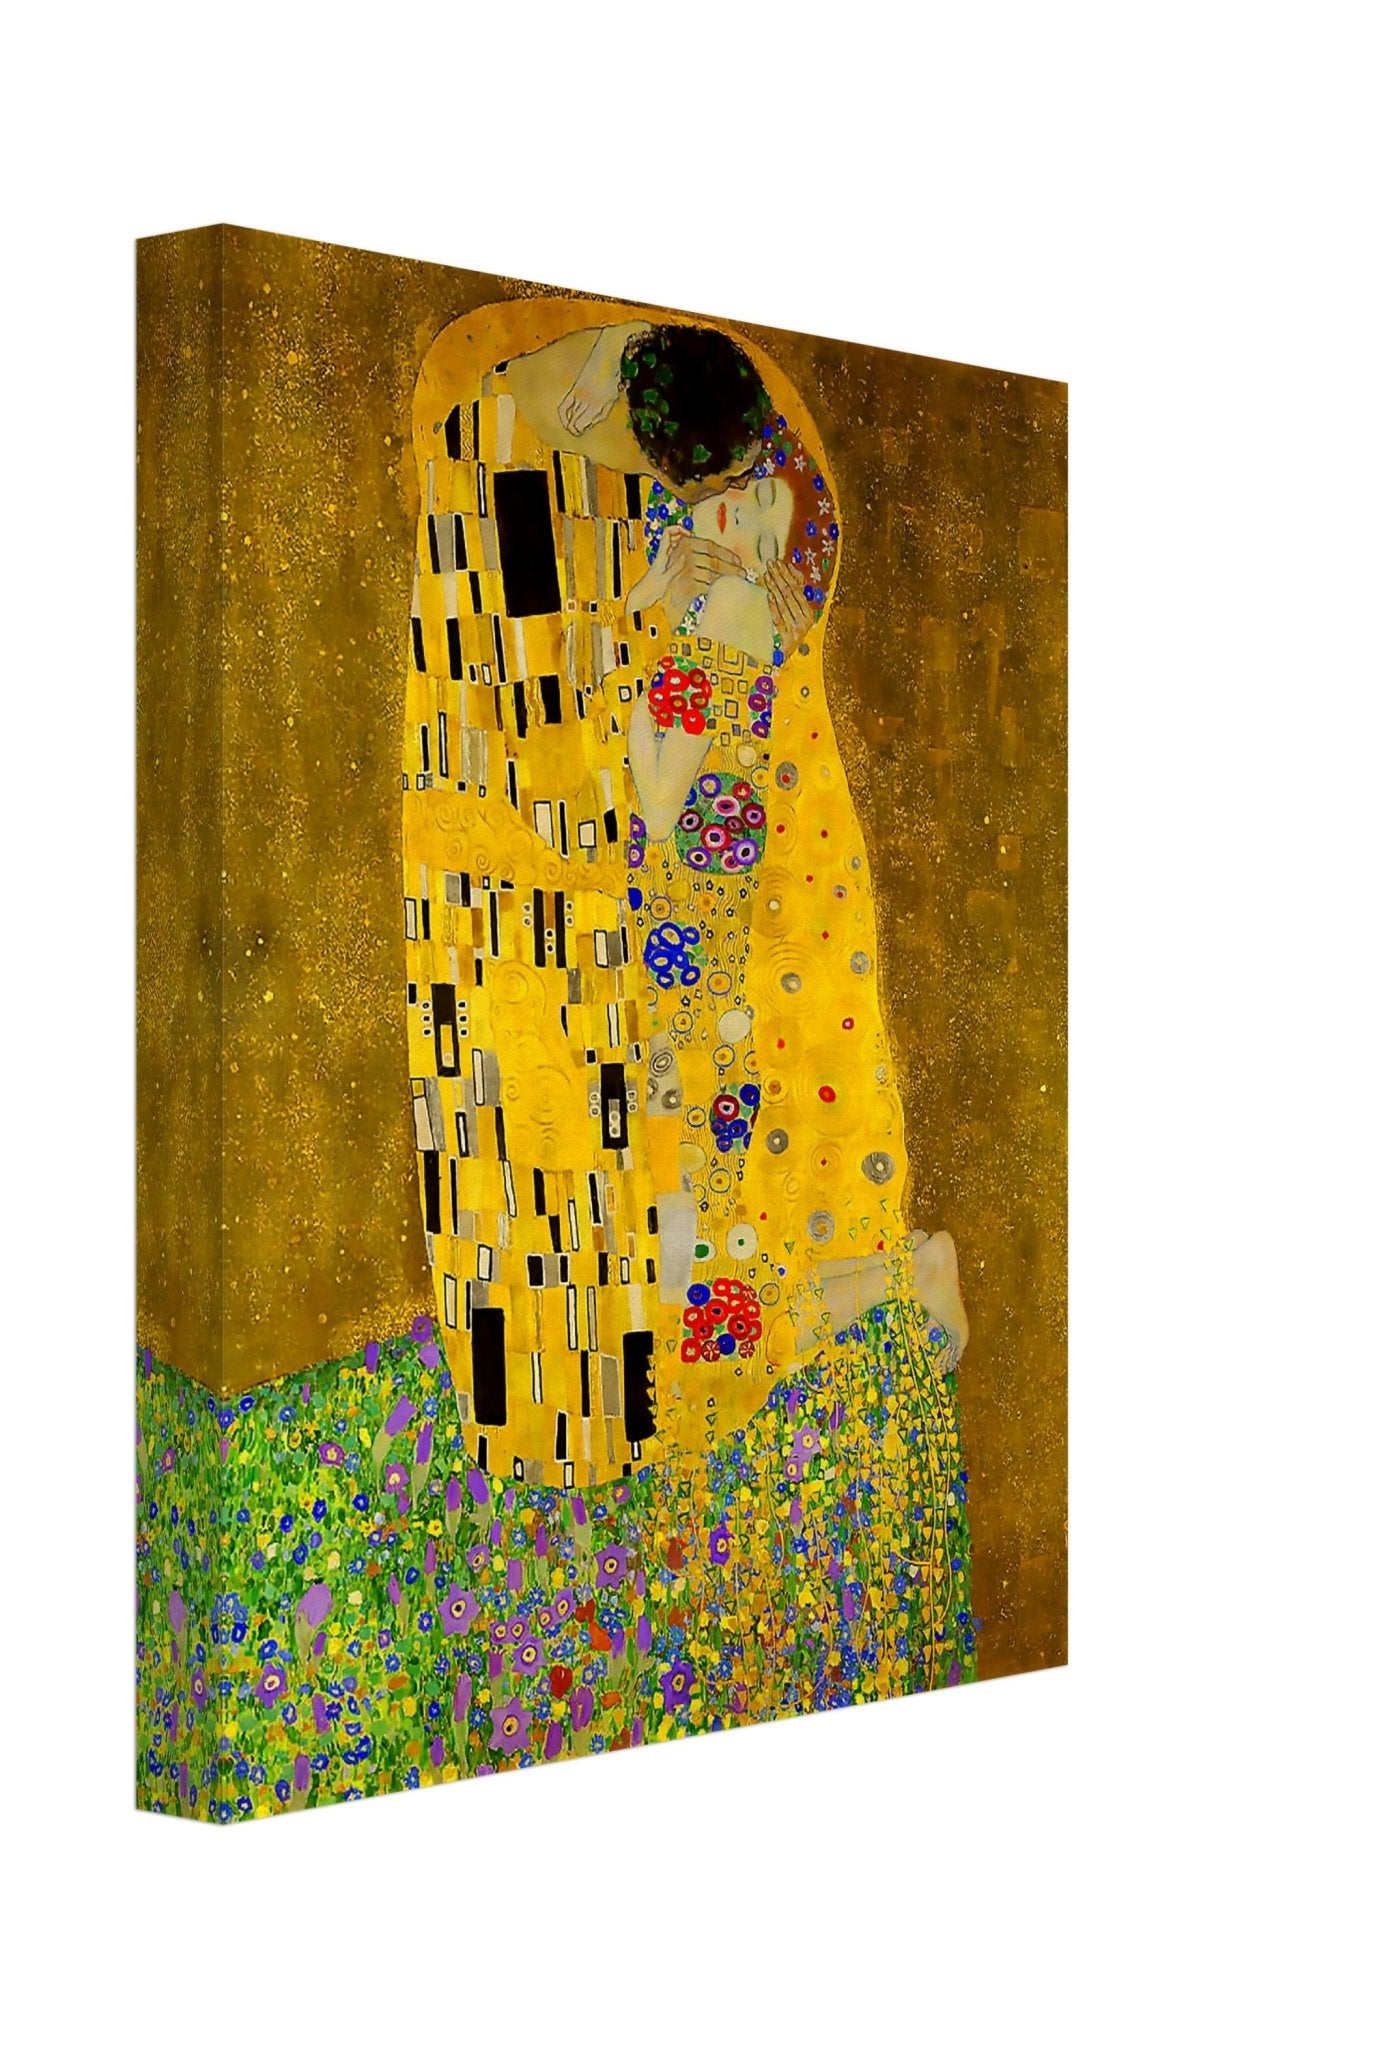 The Kiss Canvas Print, Gustav Klimt - The Kiss Print 1907 - WallArtPrints4U